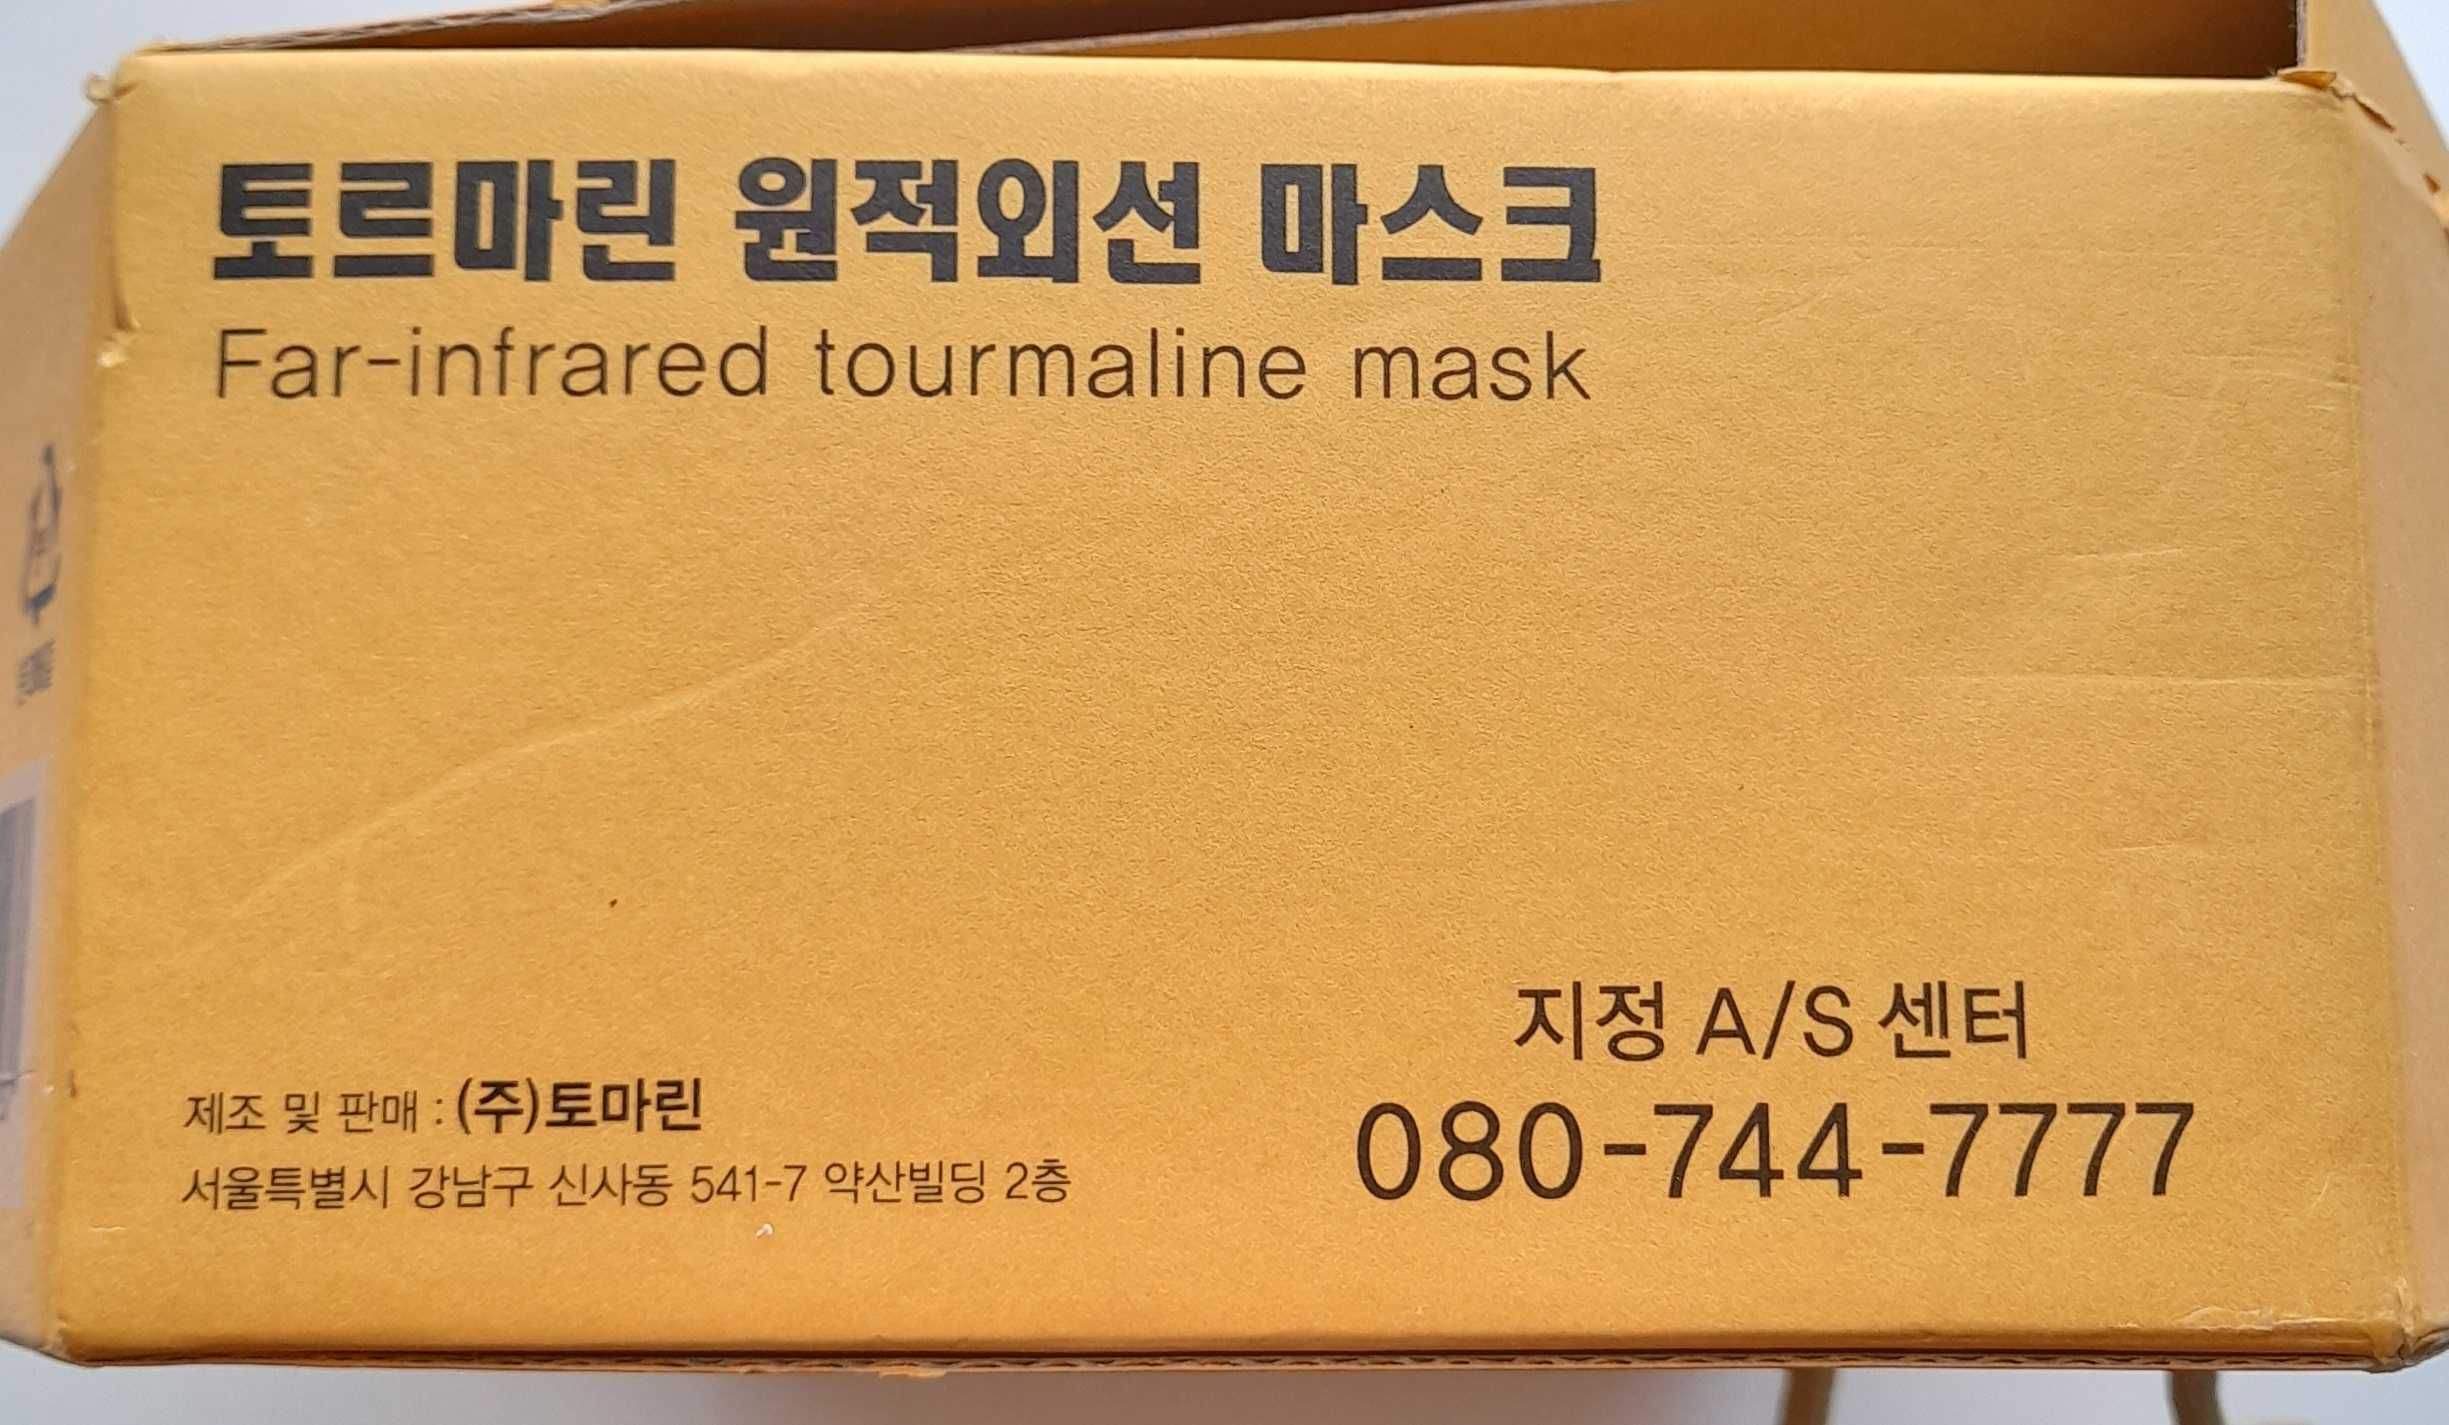 Набор лечебных лицевых масок TOMARIN (Юж. Корея)